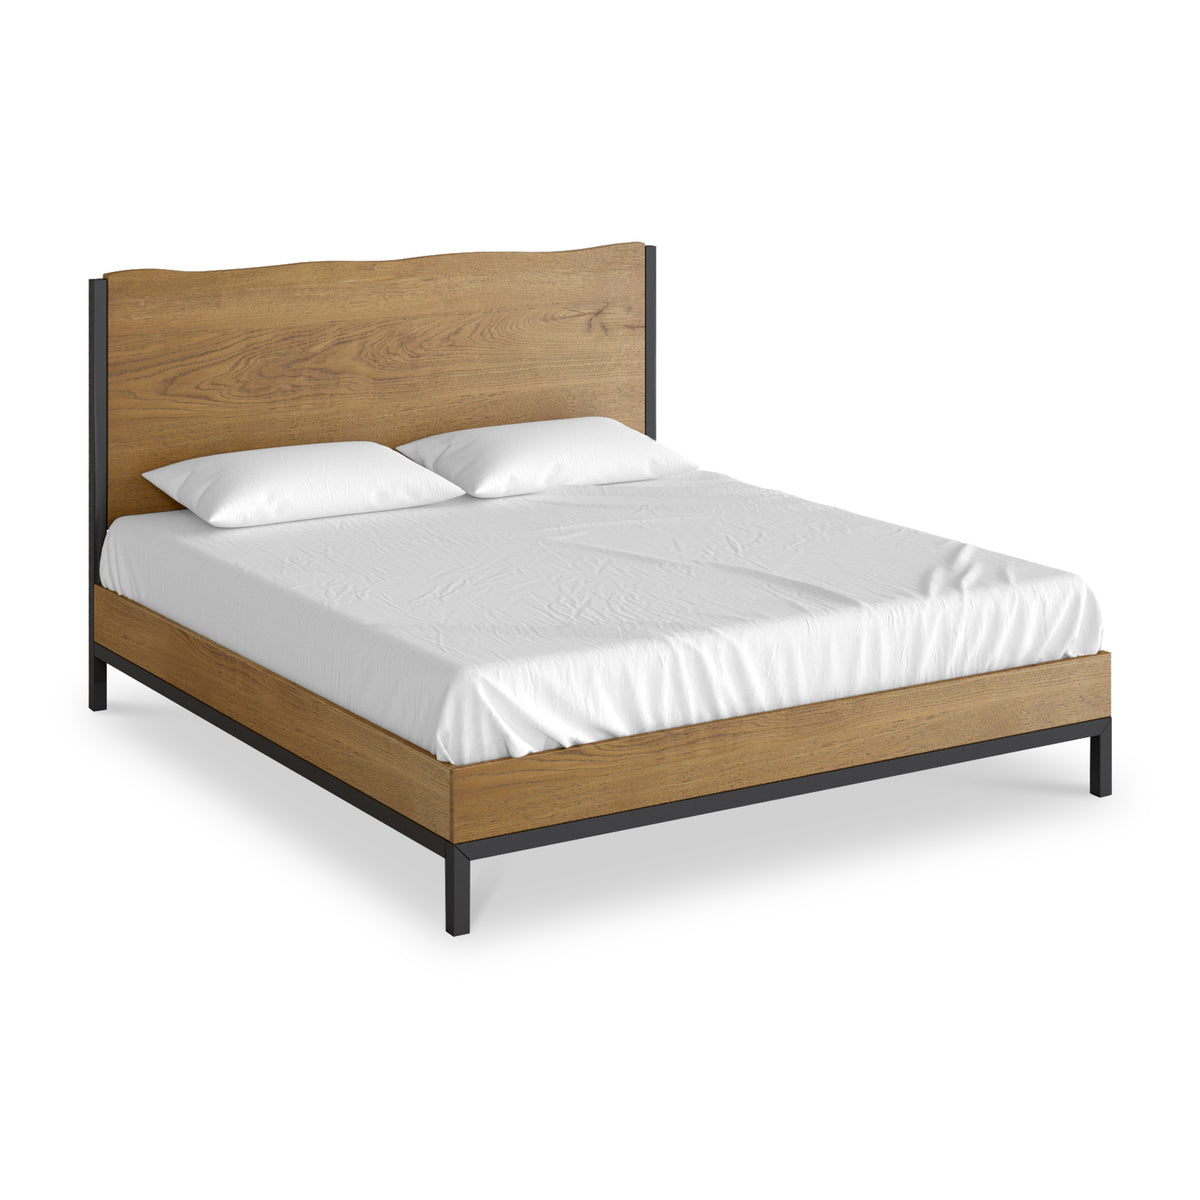 Oak Mill 6ft Super King Bed Frame from Roseland Furniture